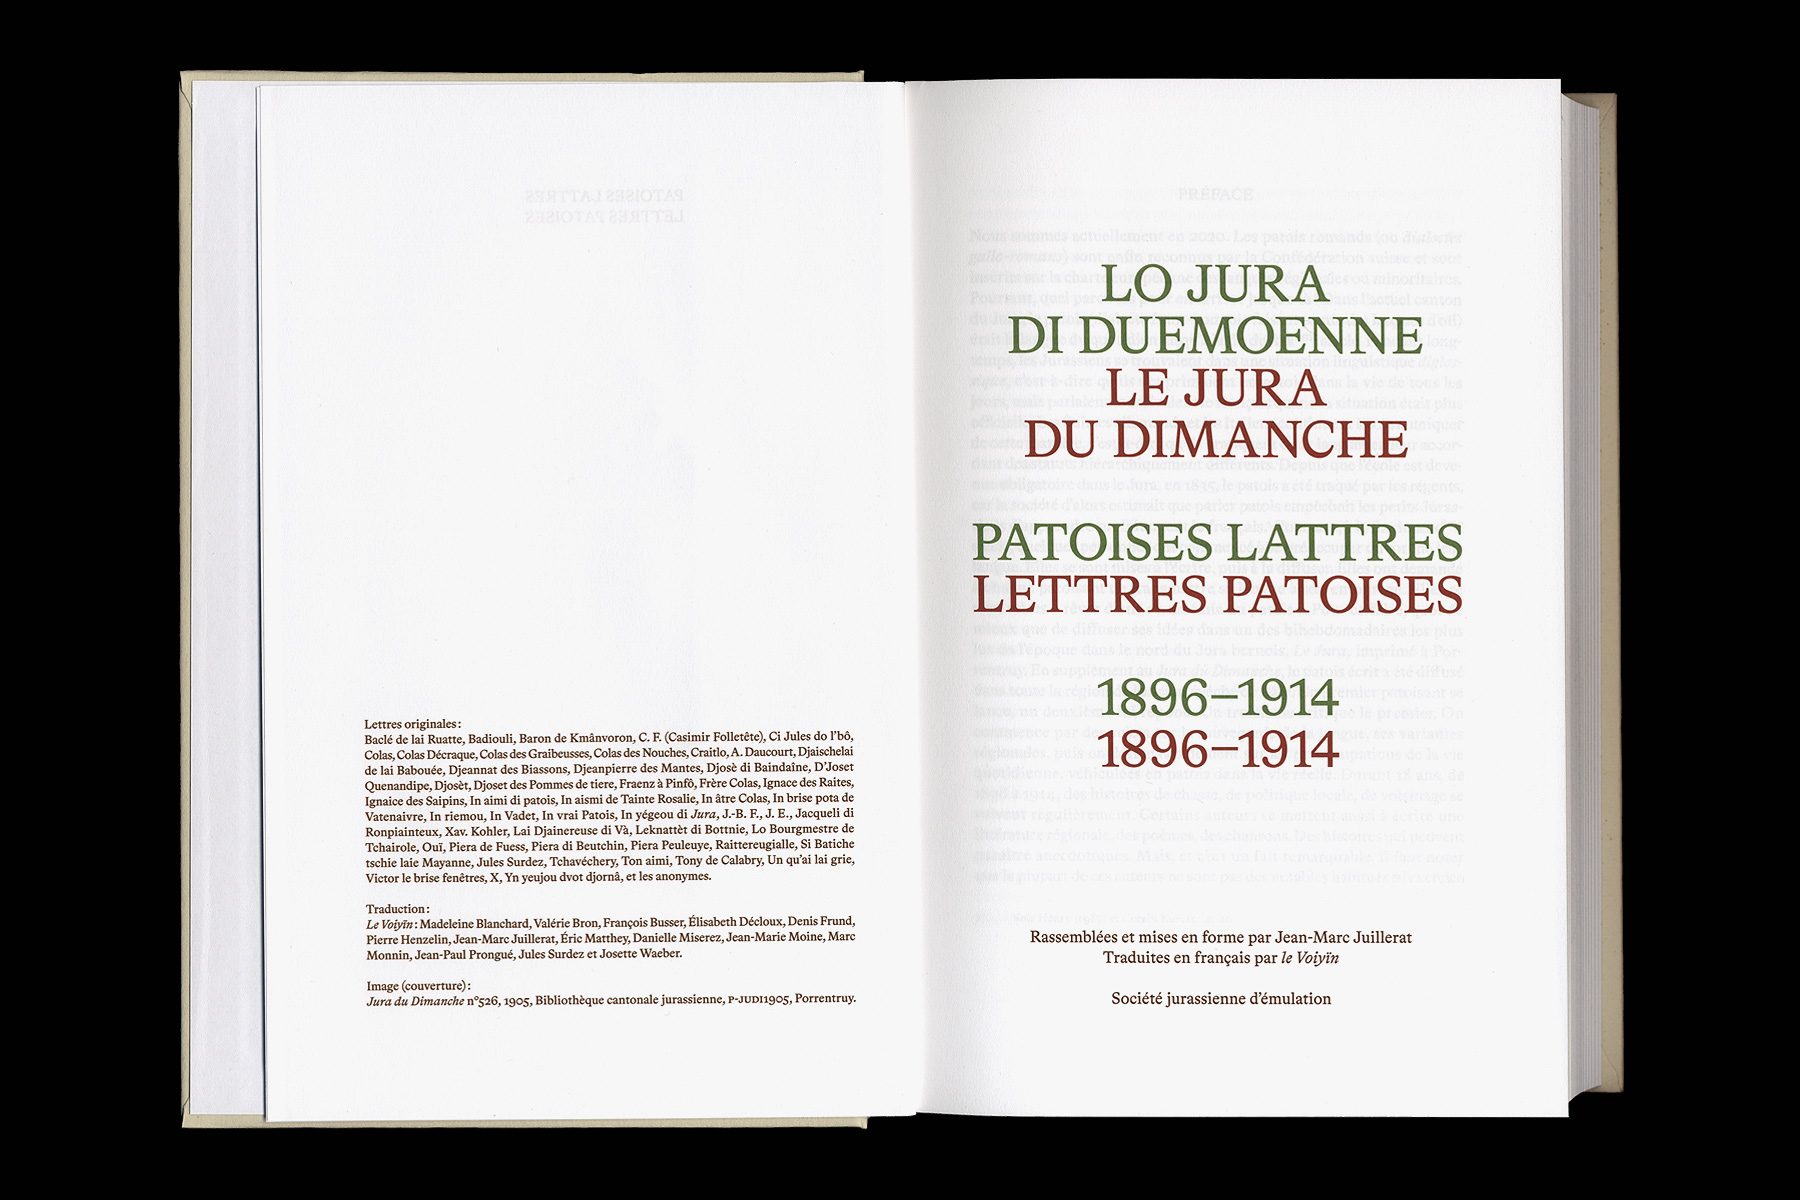 Lettres-patoises_2020_Dimitri-Jeannottat_1800x1200_2c